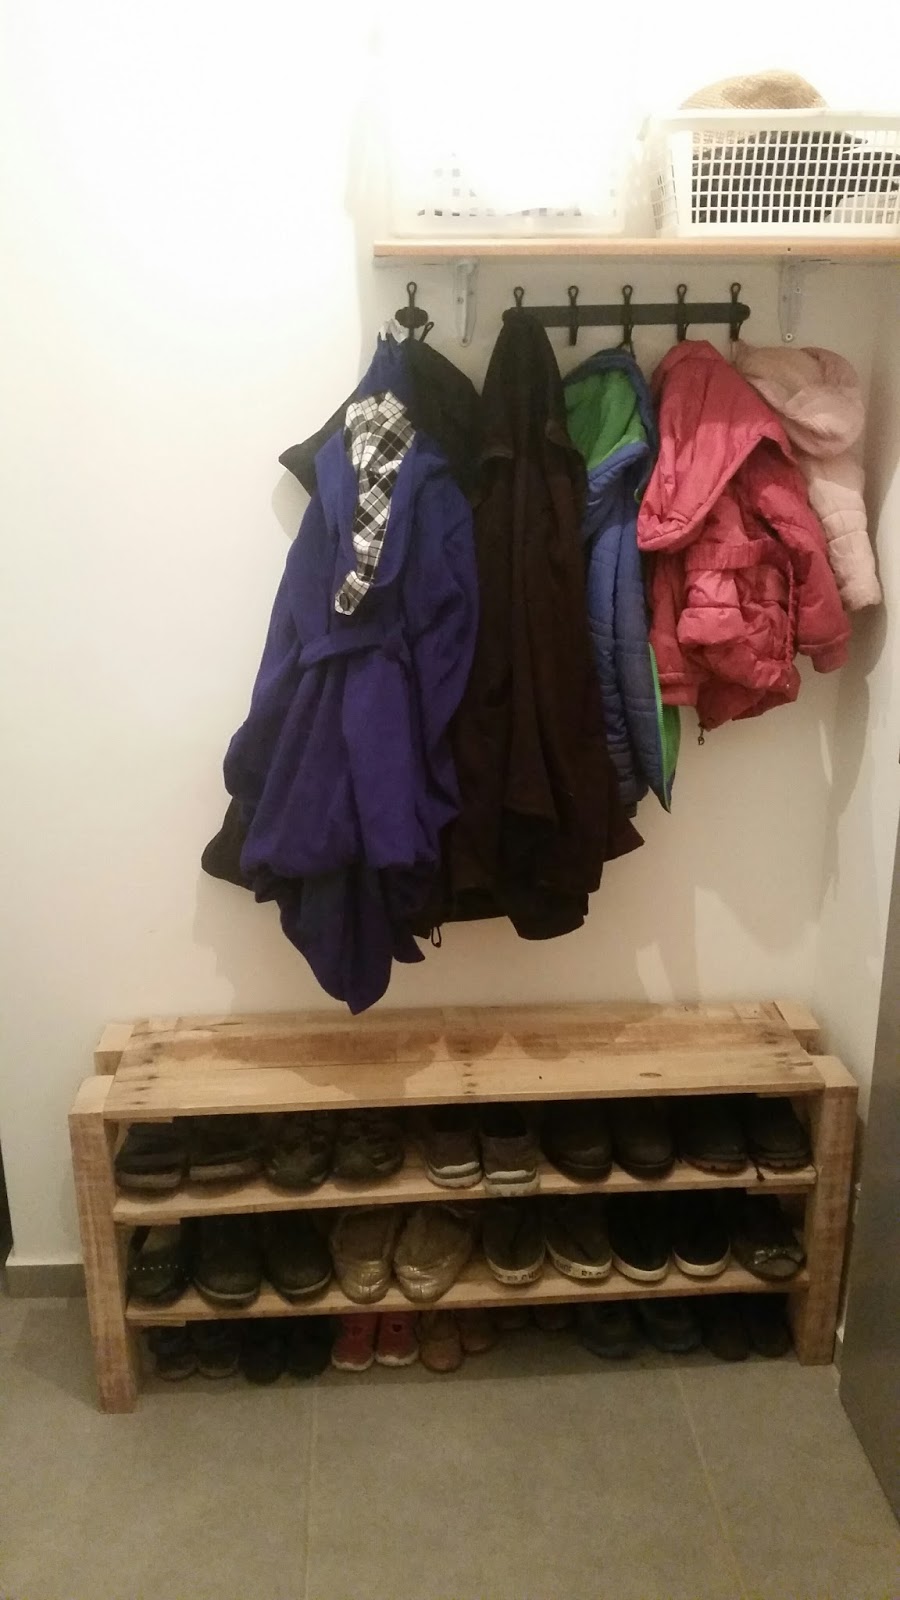 Build a DIY pallet shoe rack 